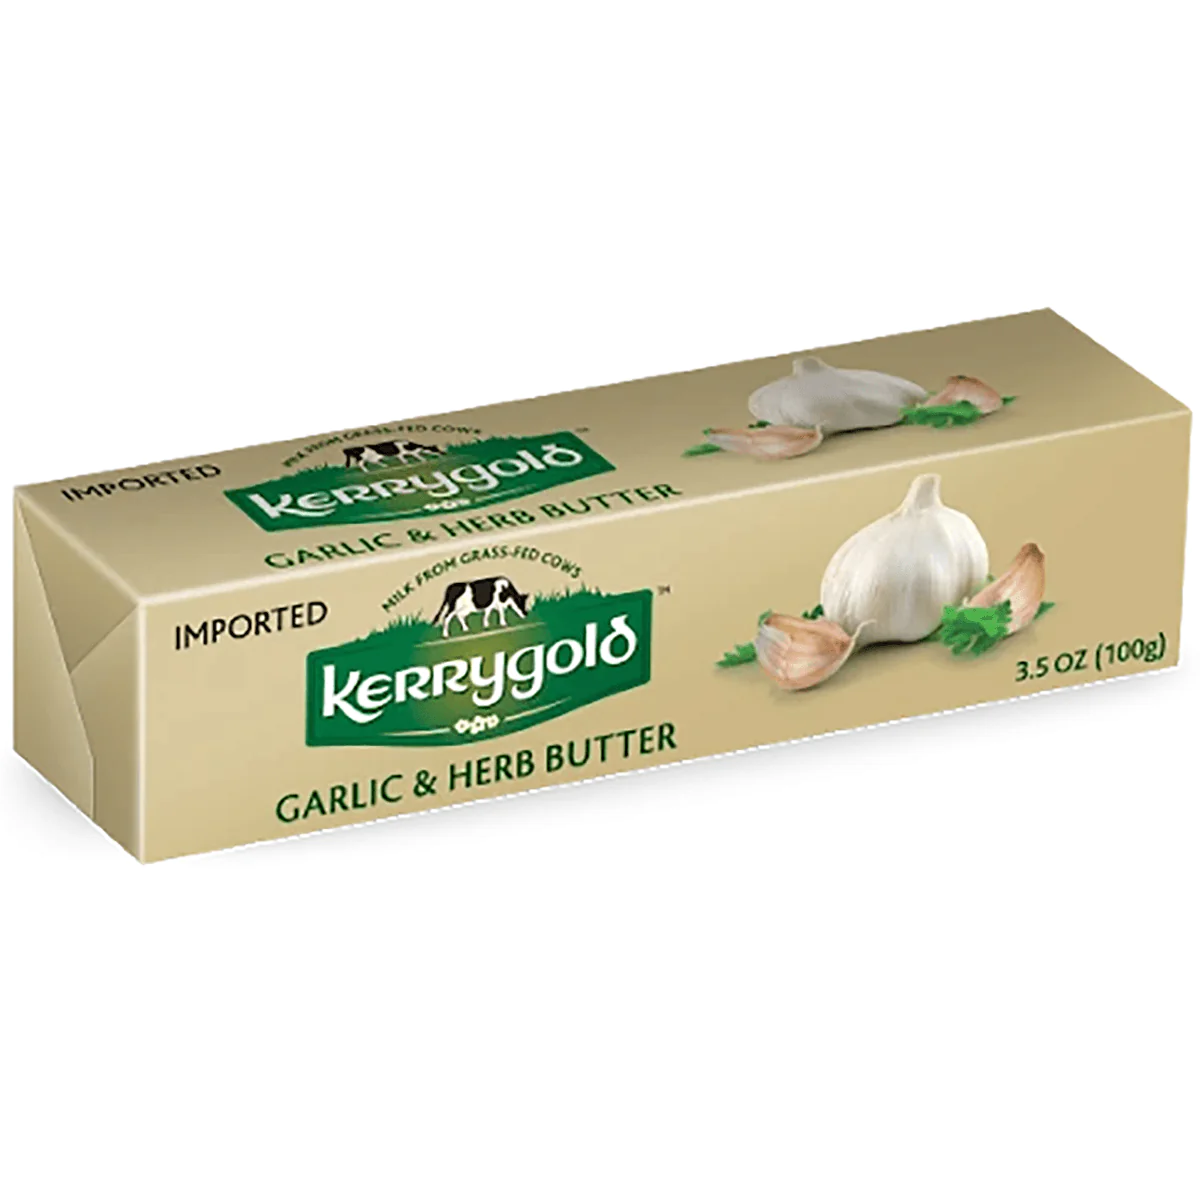 Kerrygold Garlic & Herb Butter, 3.5 Oz